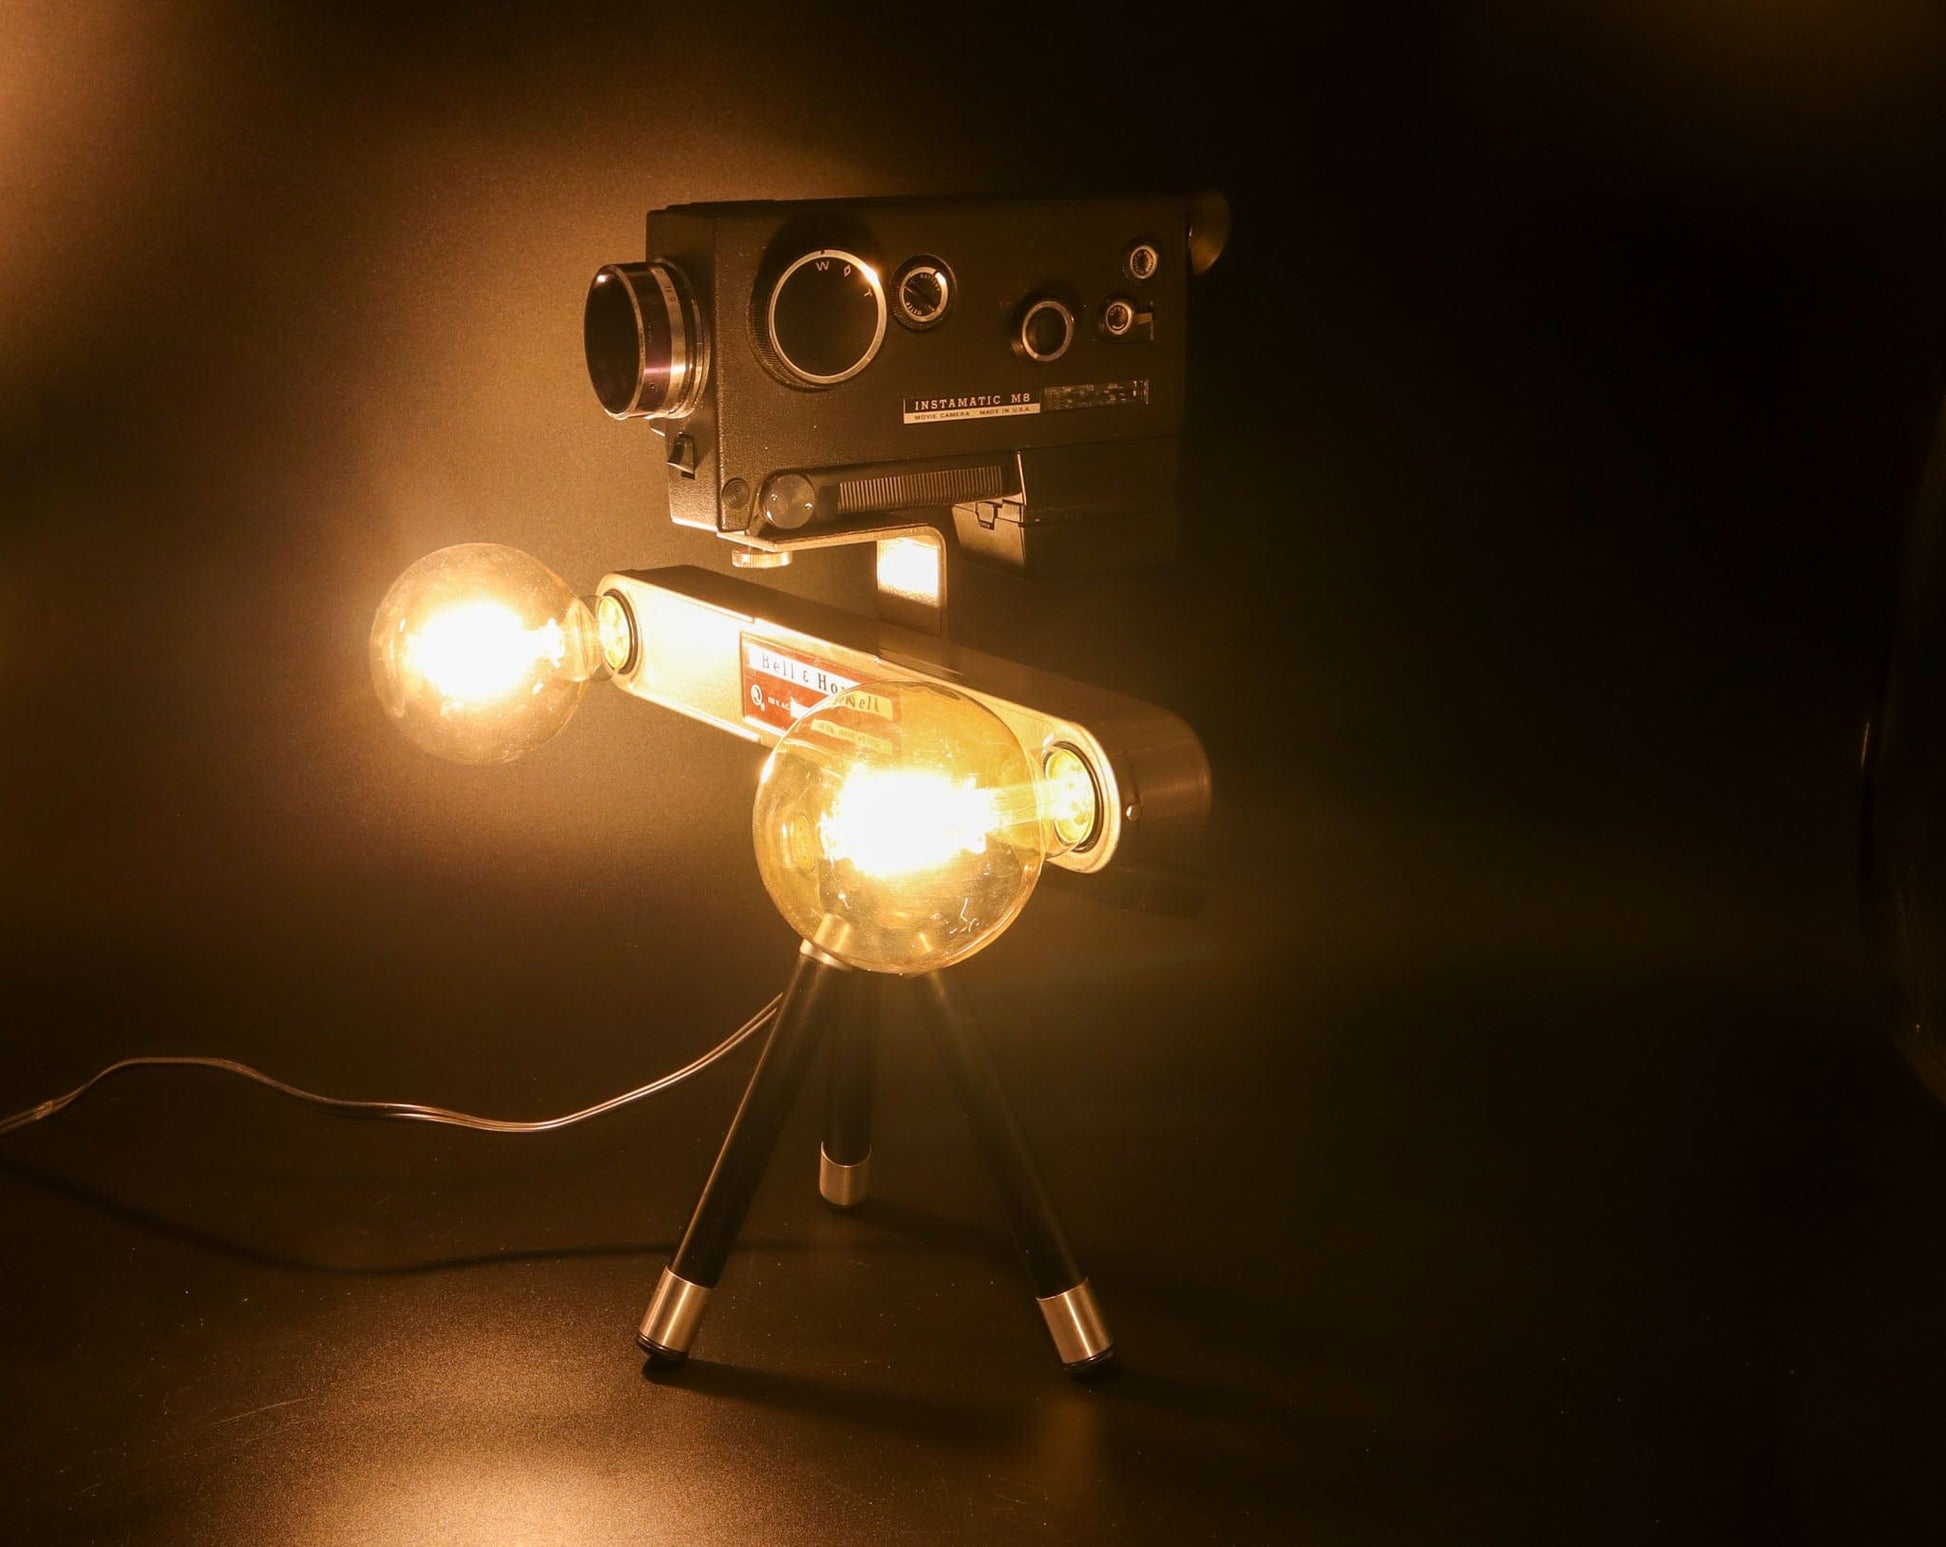 LightAndTimeArt Camera Lamp Movie Camera Lamp - 1960's 8mm Kodak Camera & Bell & Howell Light Bar on Vintage Tripod